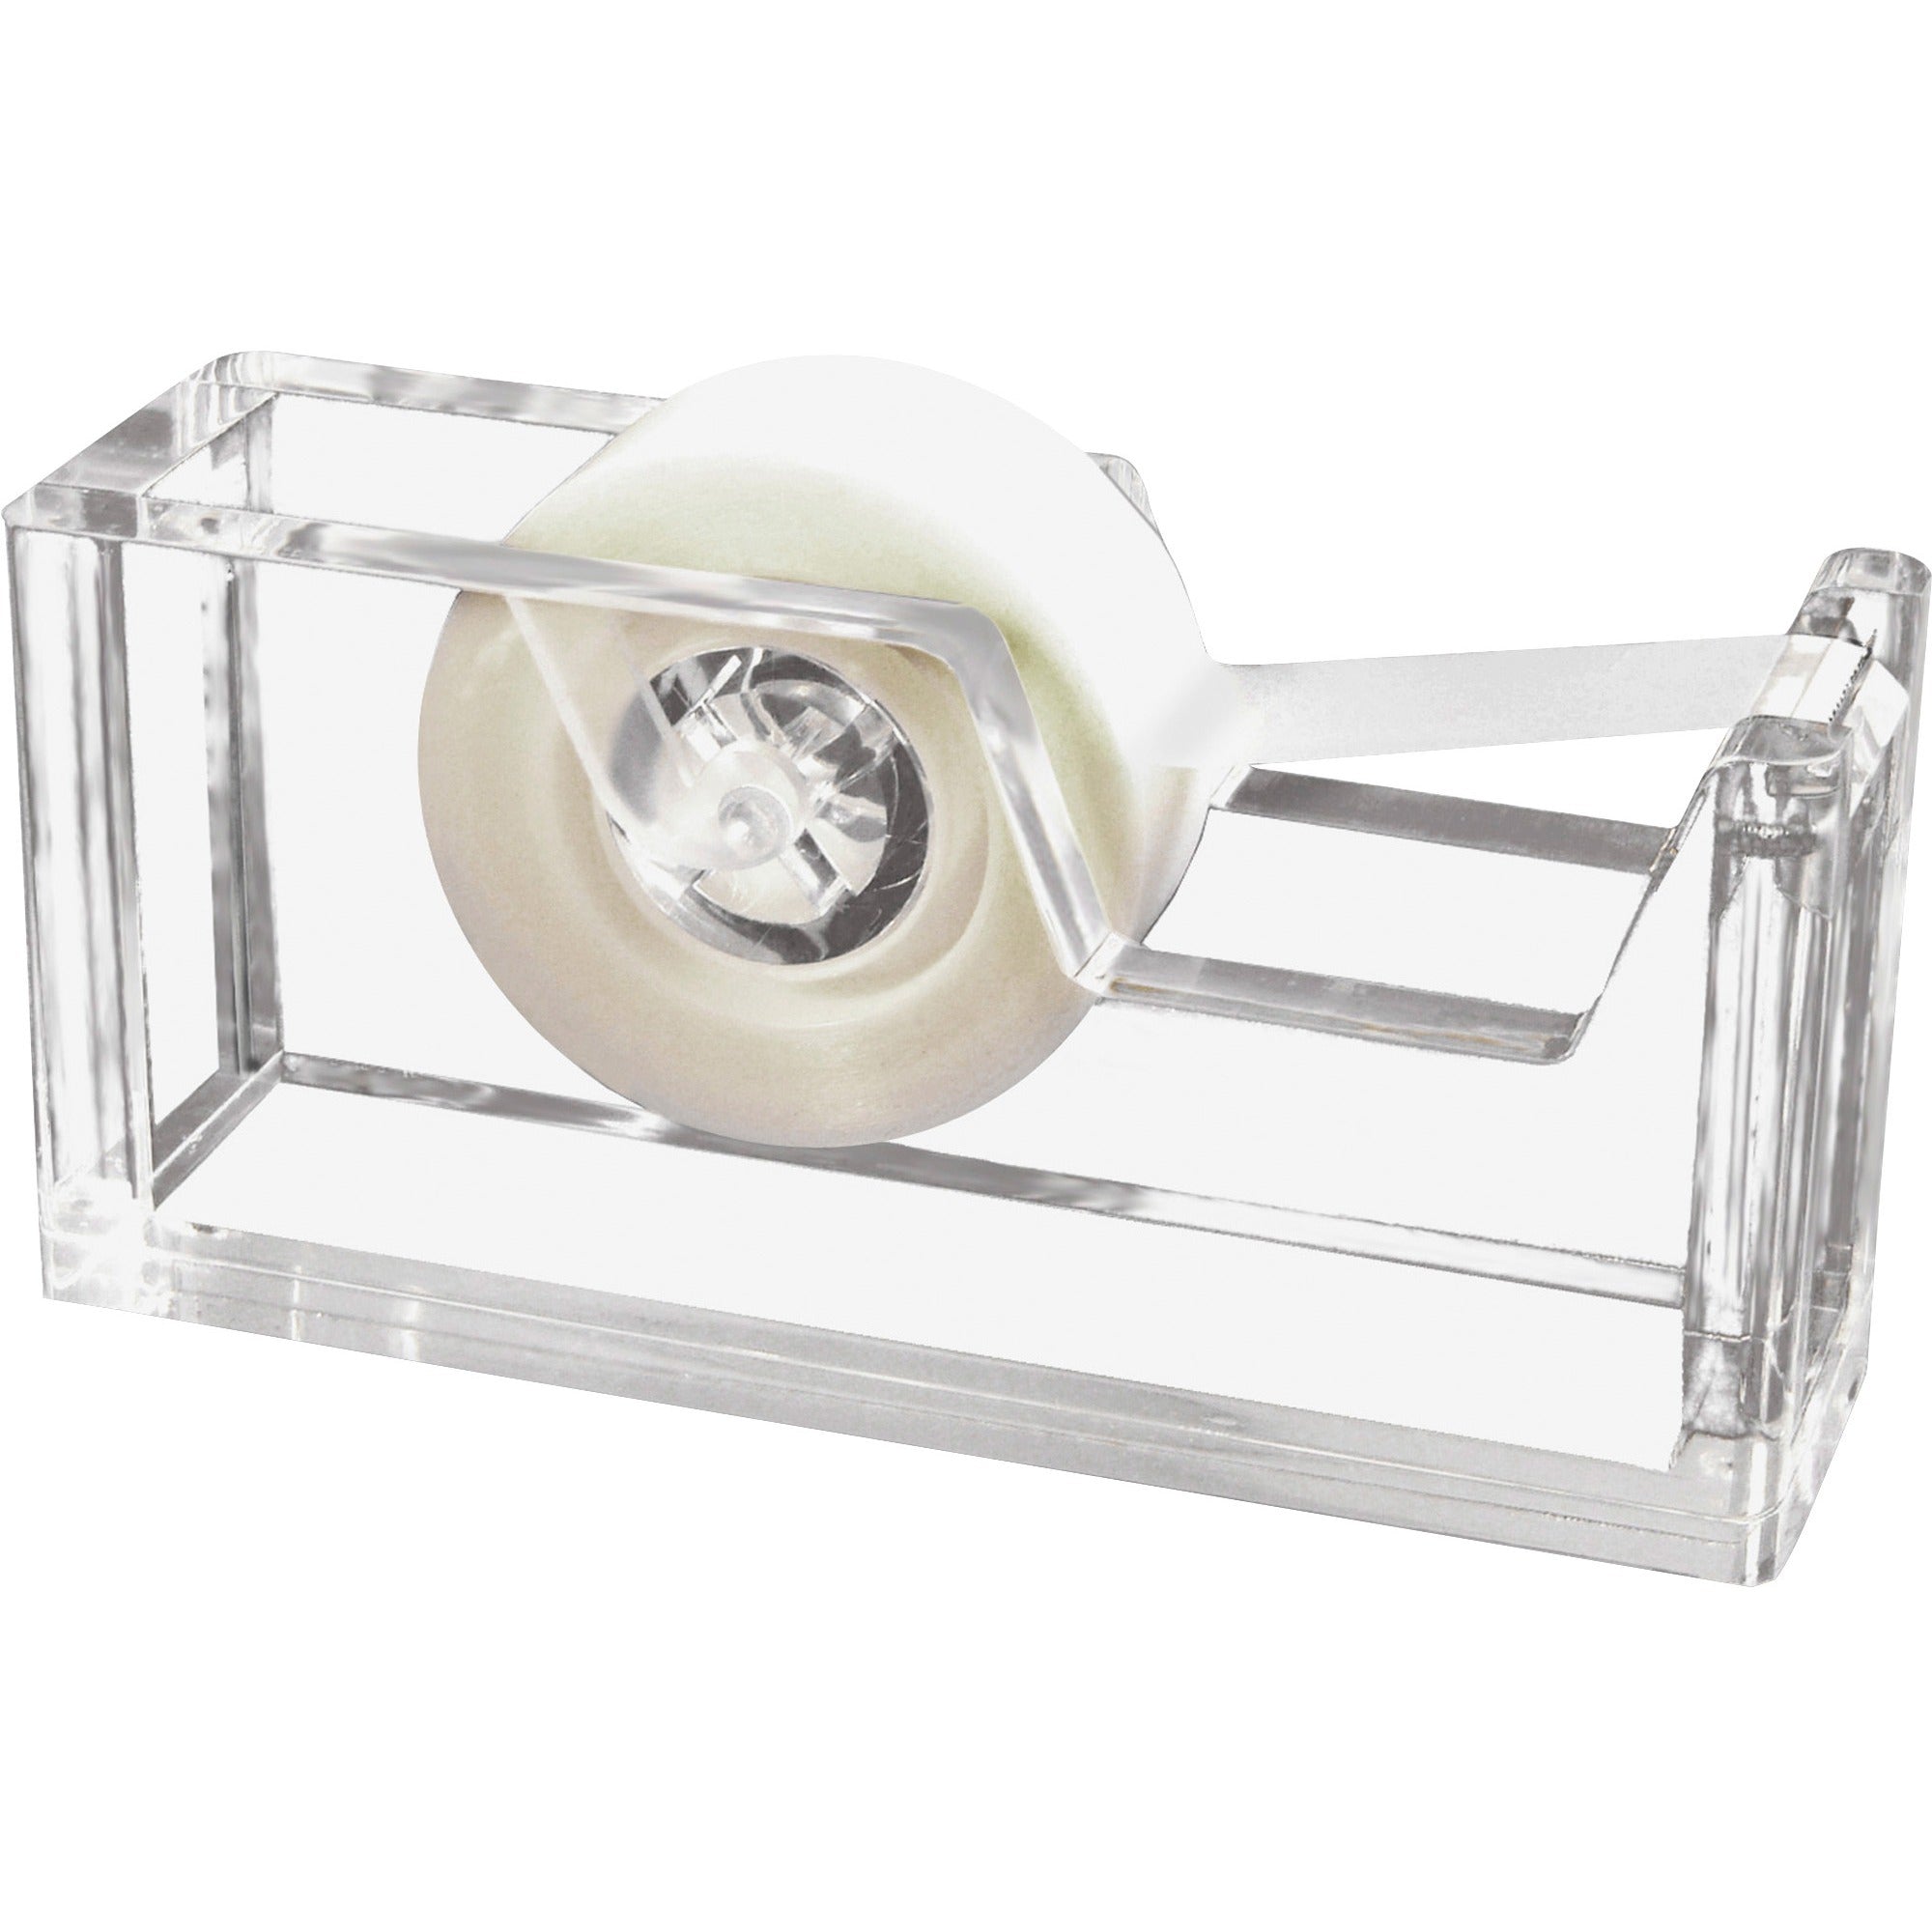 Kantek Acrylic Tape Dispenser - Holds Total 1 Tape(s) - Refillable - Non-skid Base - Clear - 1 Each - 